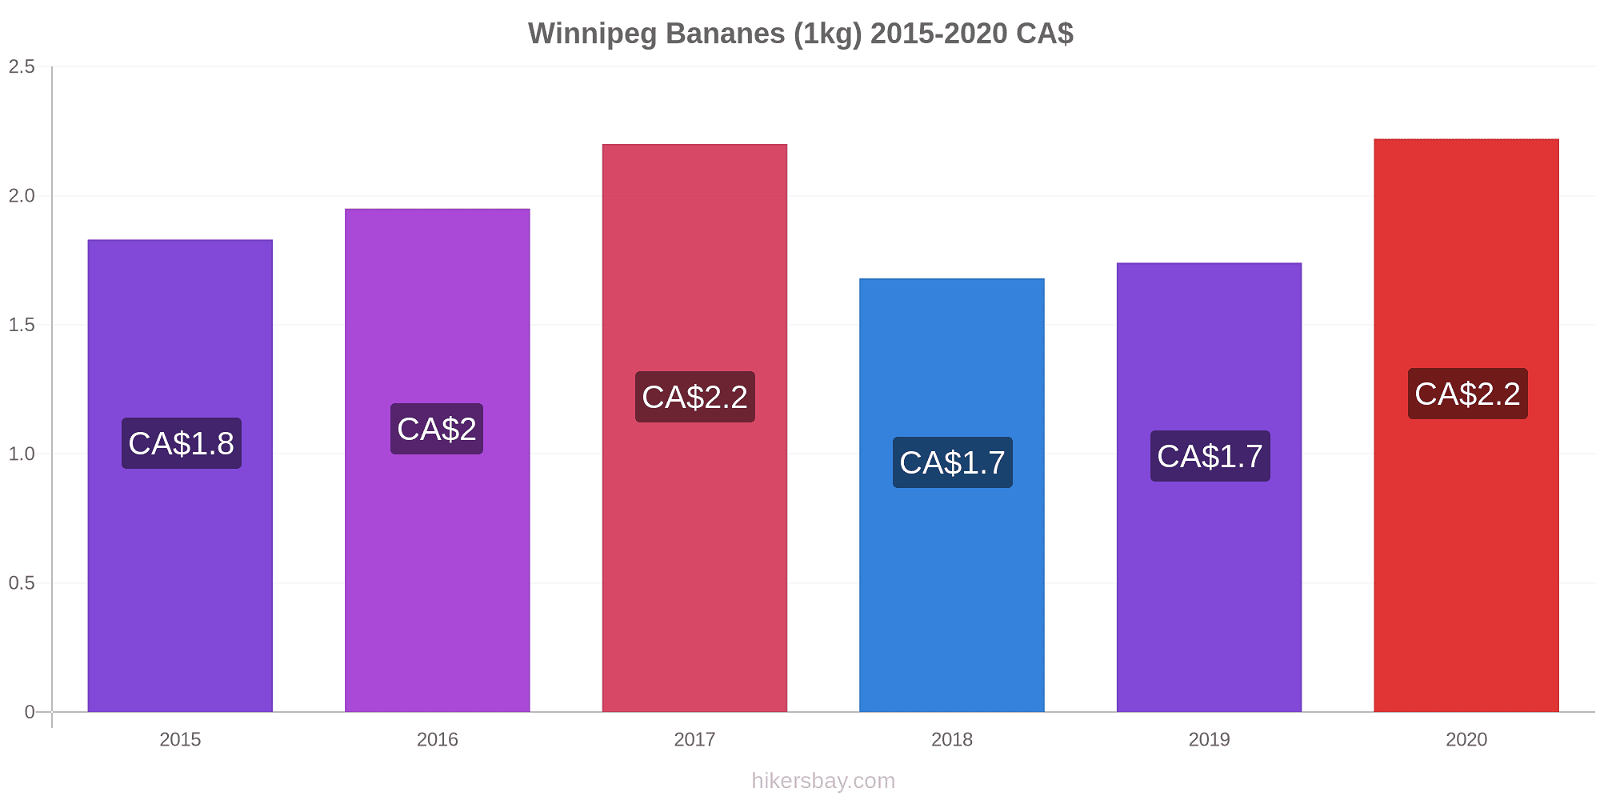 Winnipeg changements de prix Bananes (1kg) hikersbay.com